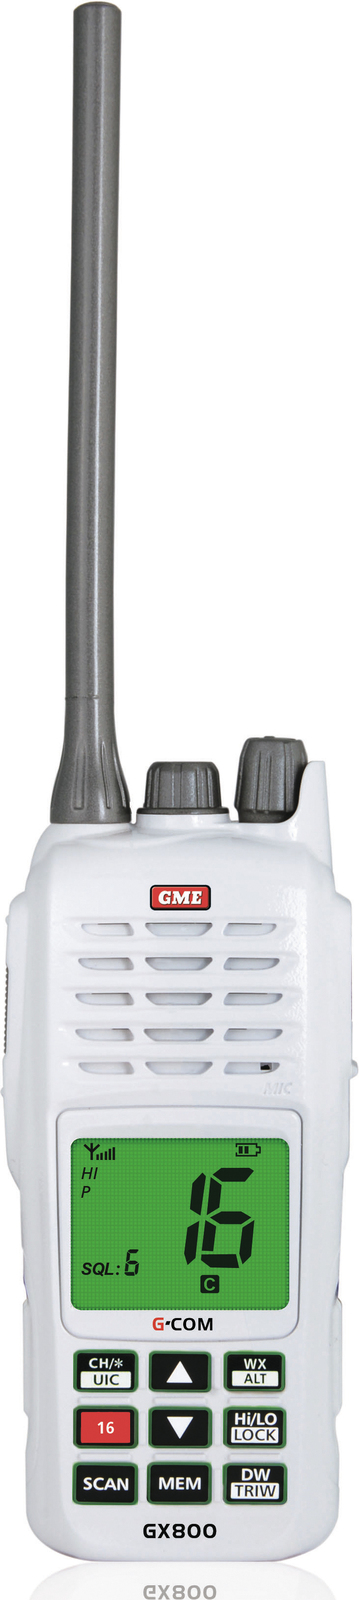 GME-GX800W